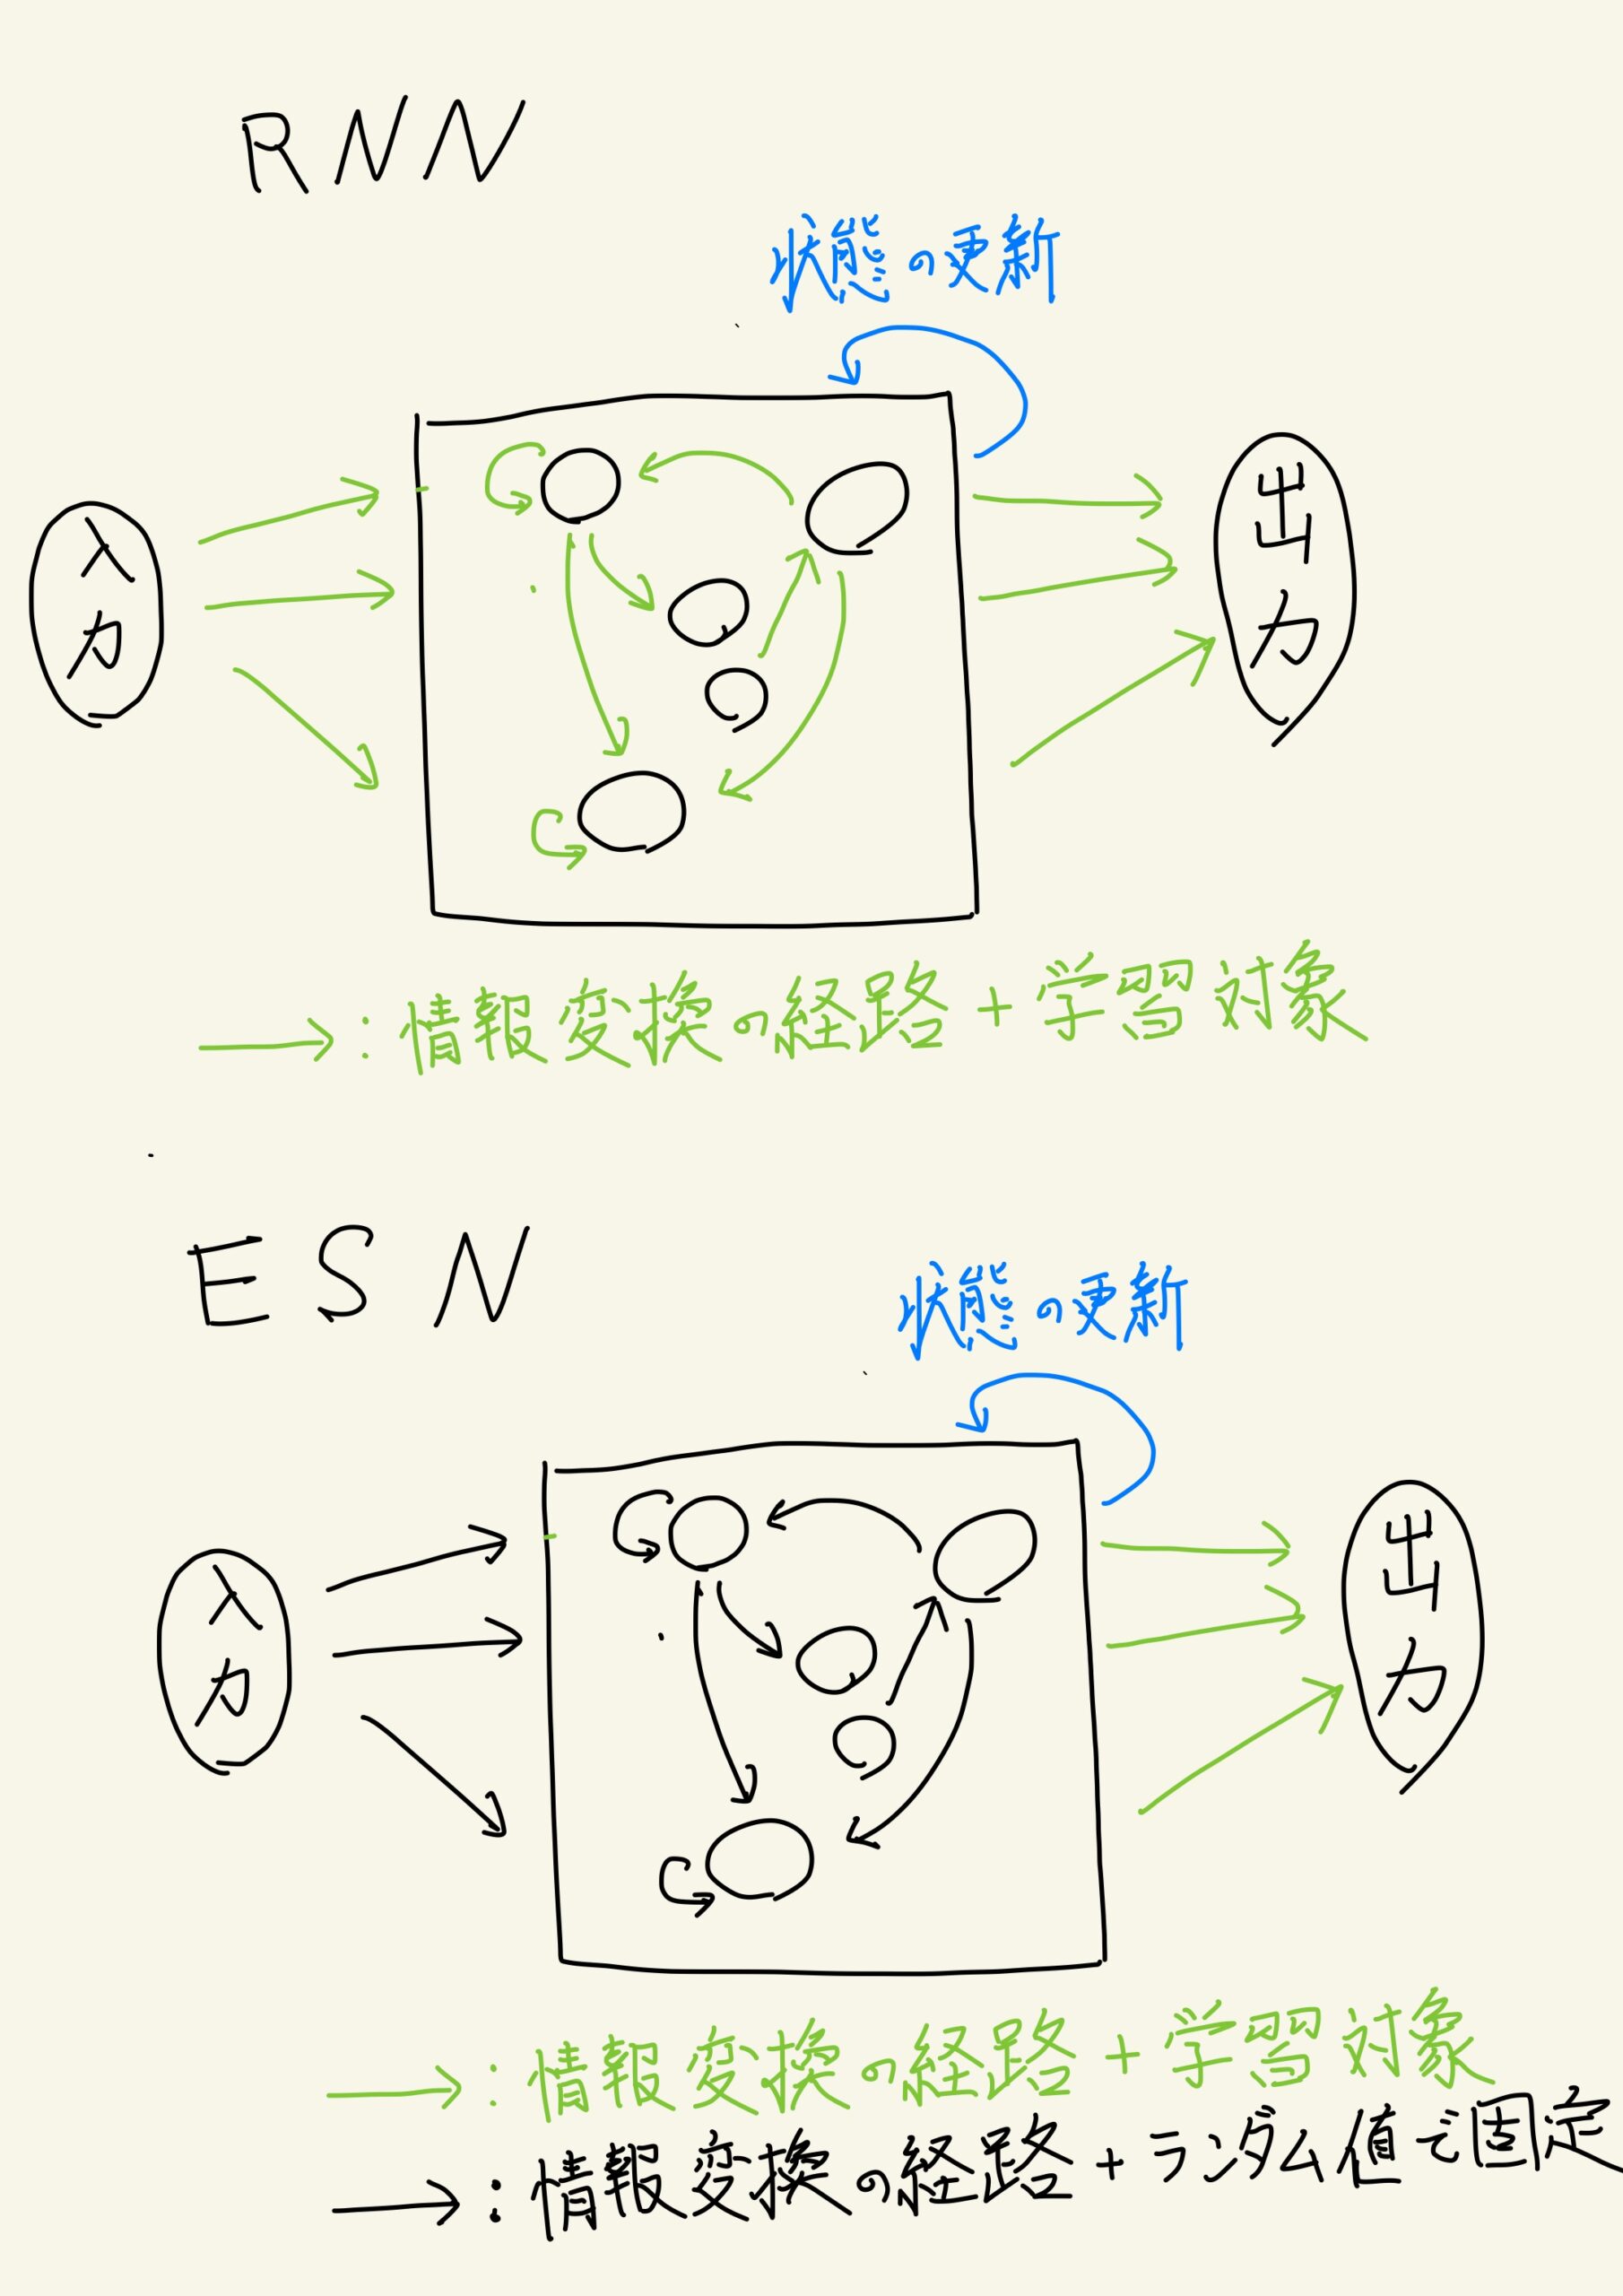 rnn-vs-echo-state-network-scaled.jpg